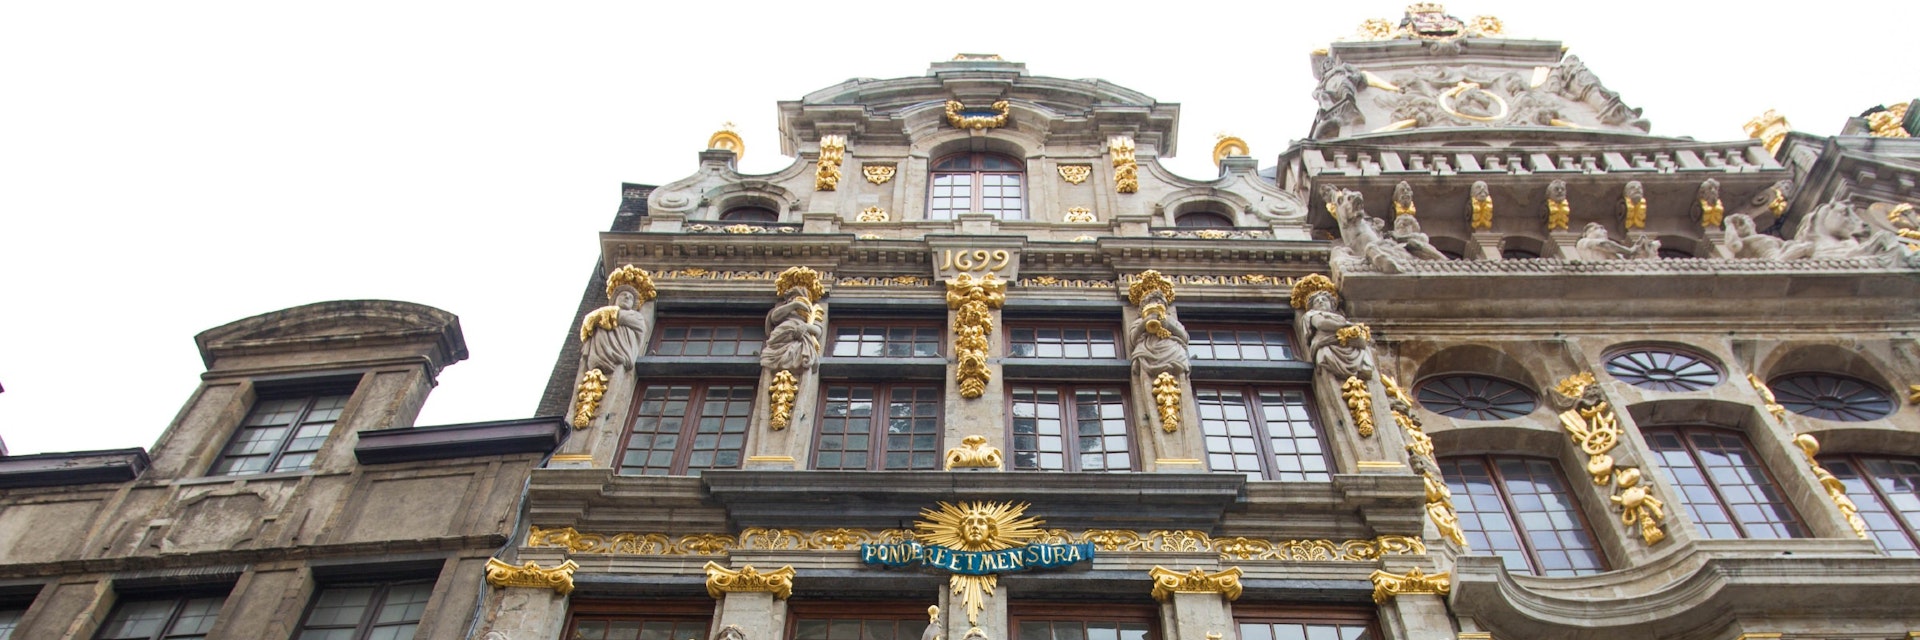 Le Renard upper facade